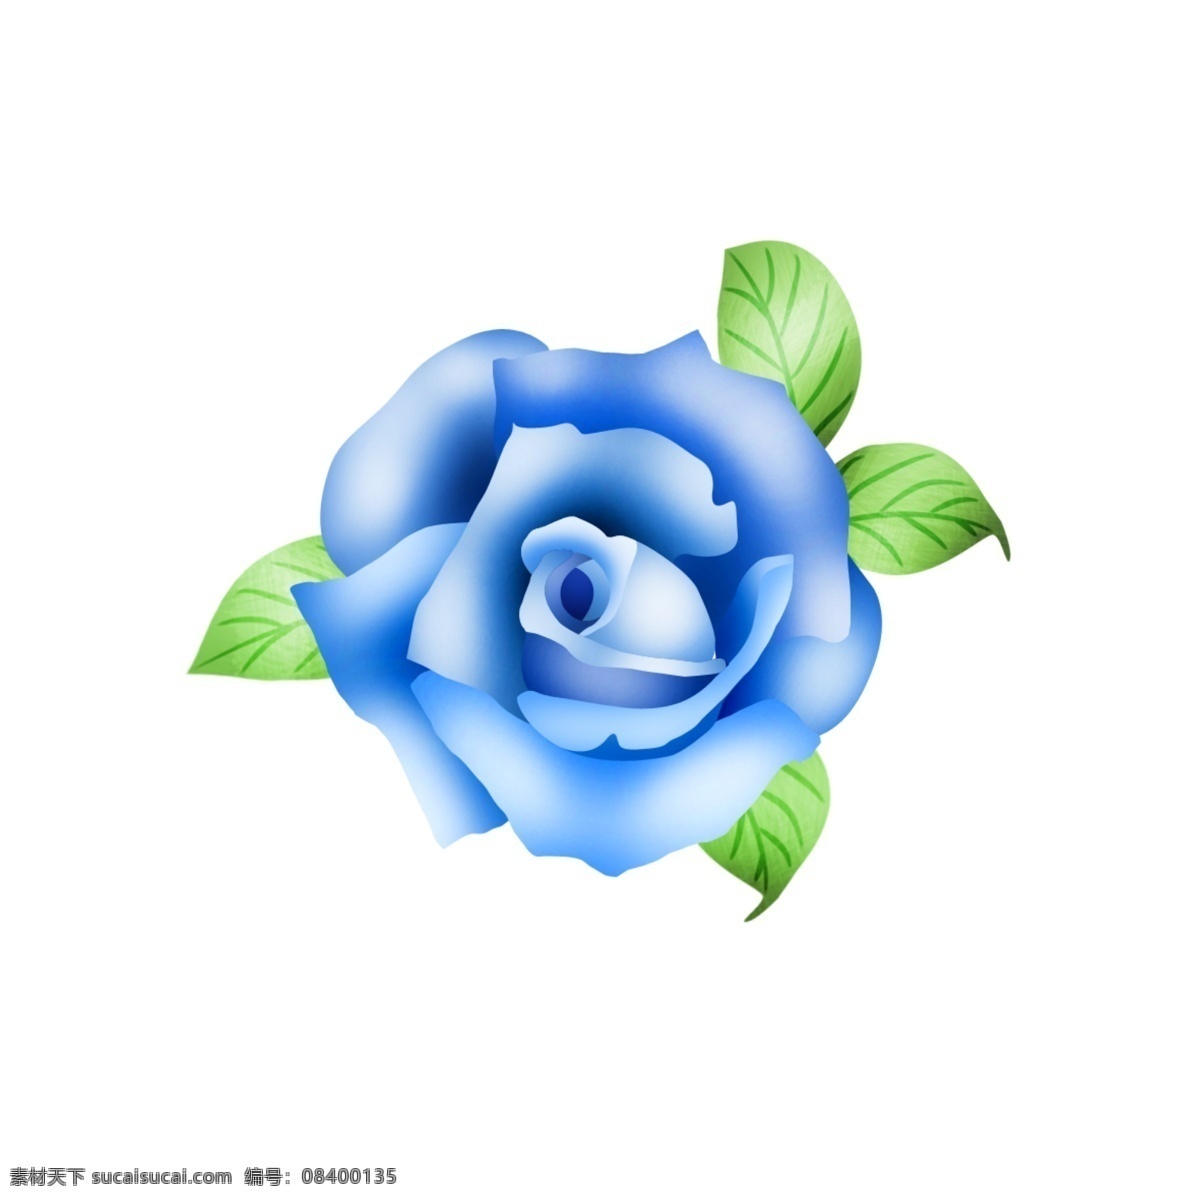 大气 矢量 手绘 蓝色 玫瑰花 手绘玫瑰花 矢量玫瑰 蓝玫瑰 手绘花 矢量玫瑰花 玫瑰一朵